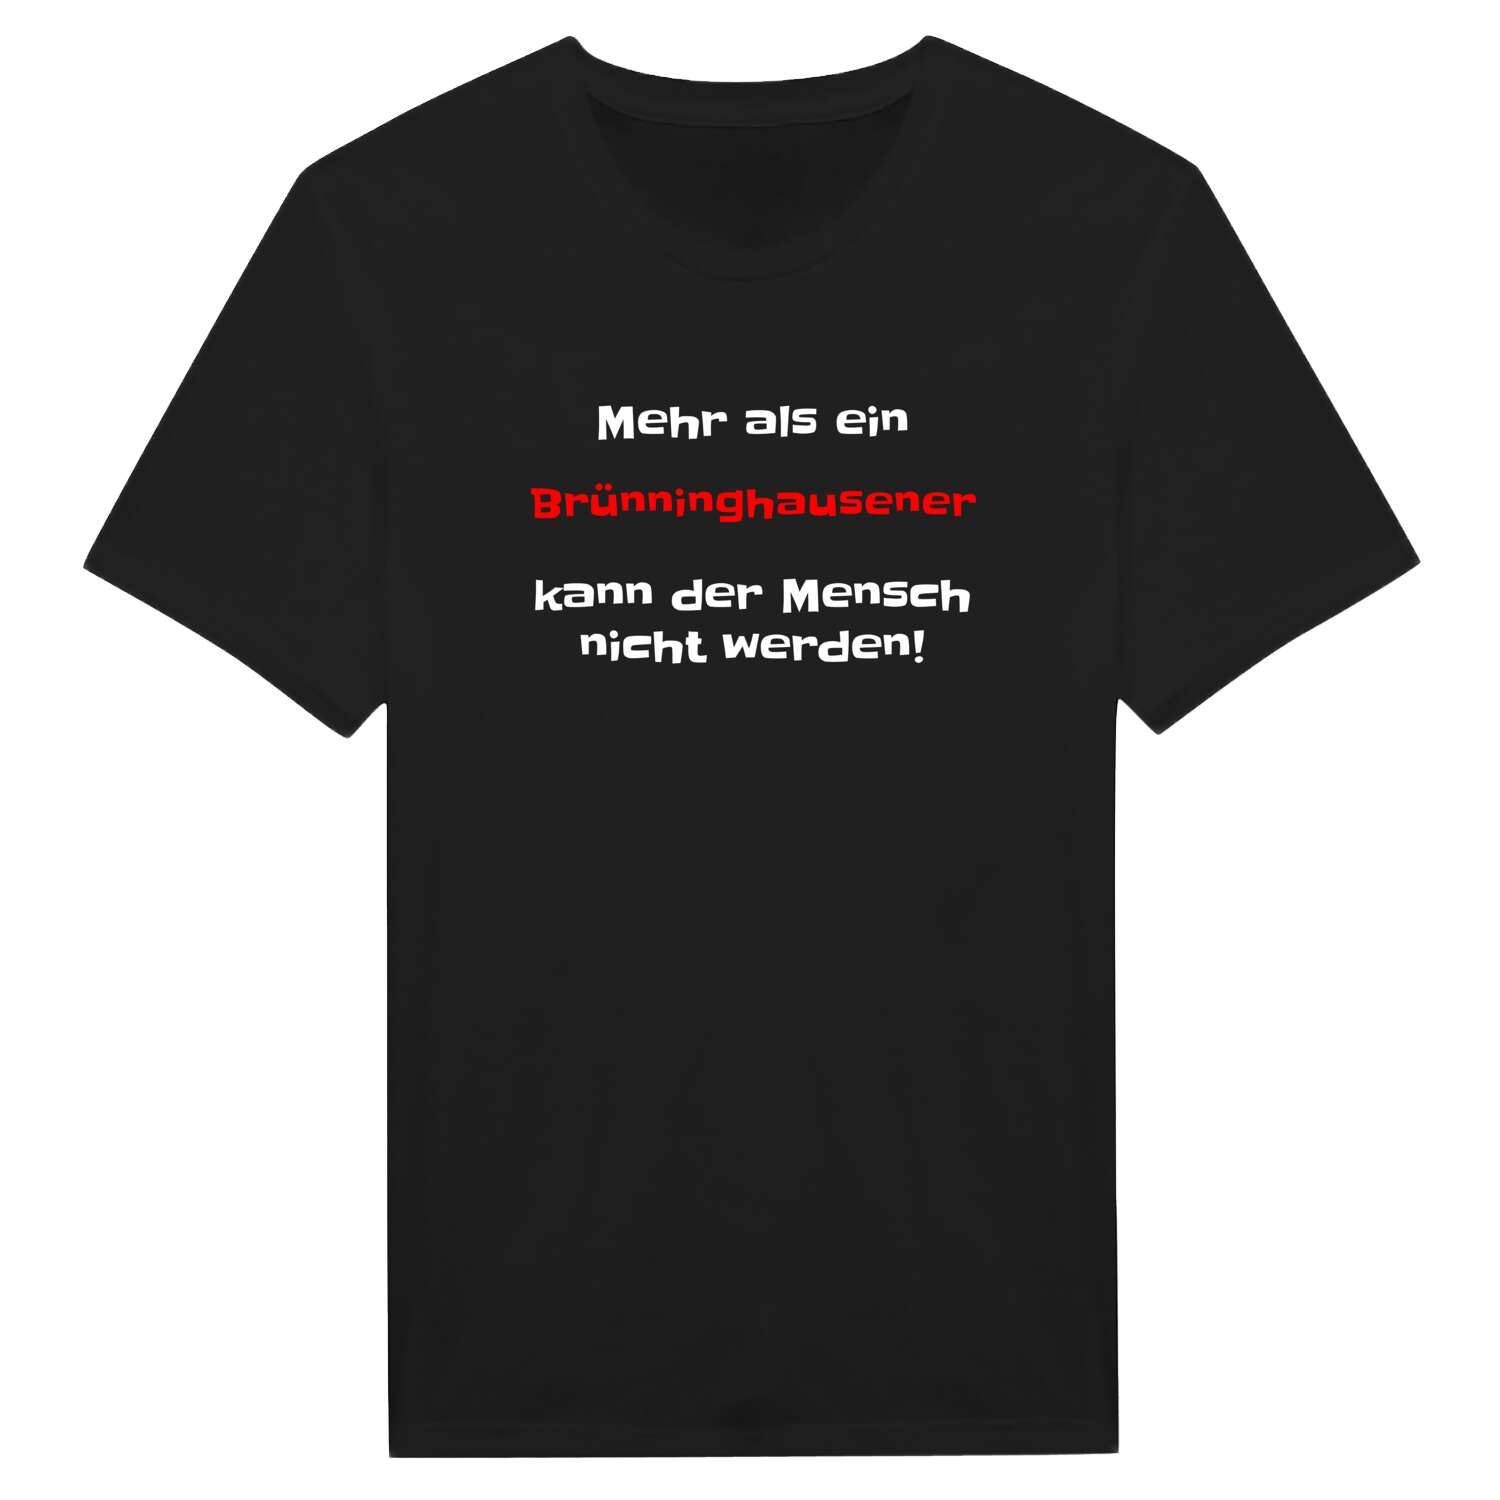 Brünninghausen T-Shirt »Mehr als ein«